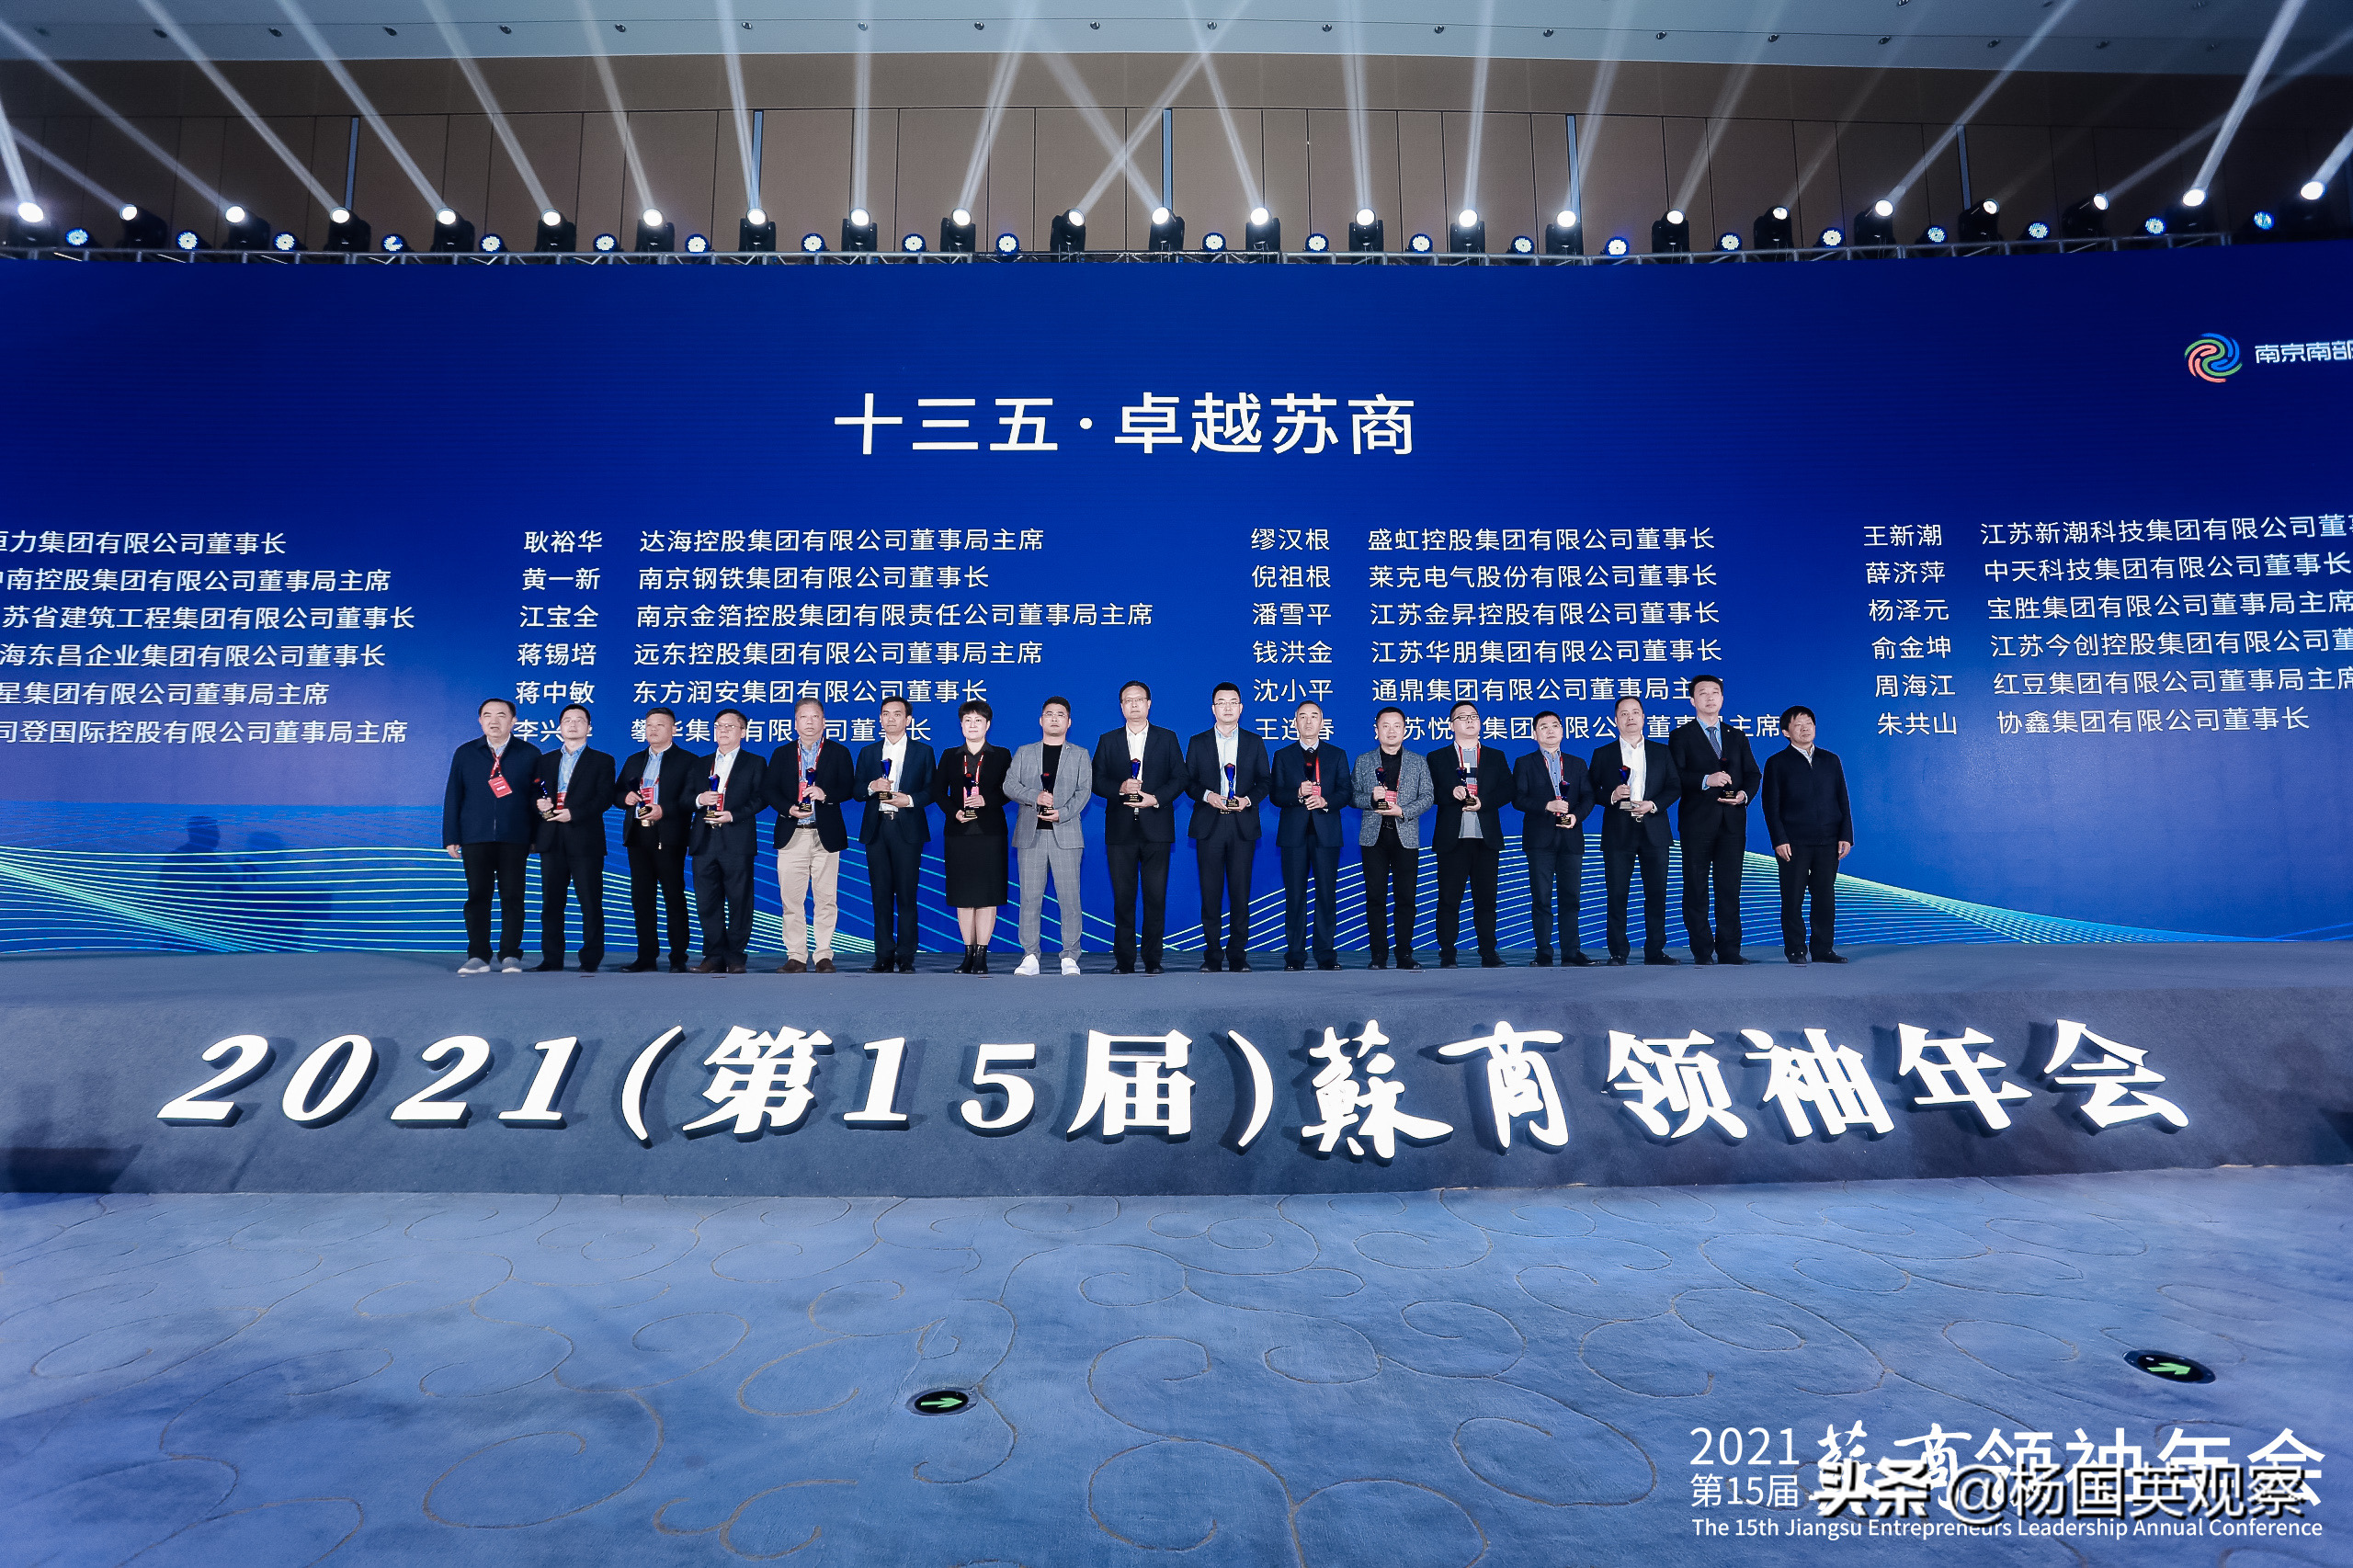 21 第15屆 蘇商領袖年會在南京溧水舉行 助推蘇商實業開新局 楊國英觀察 Mdeditor